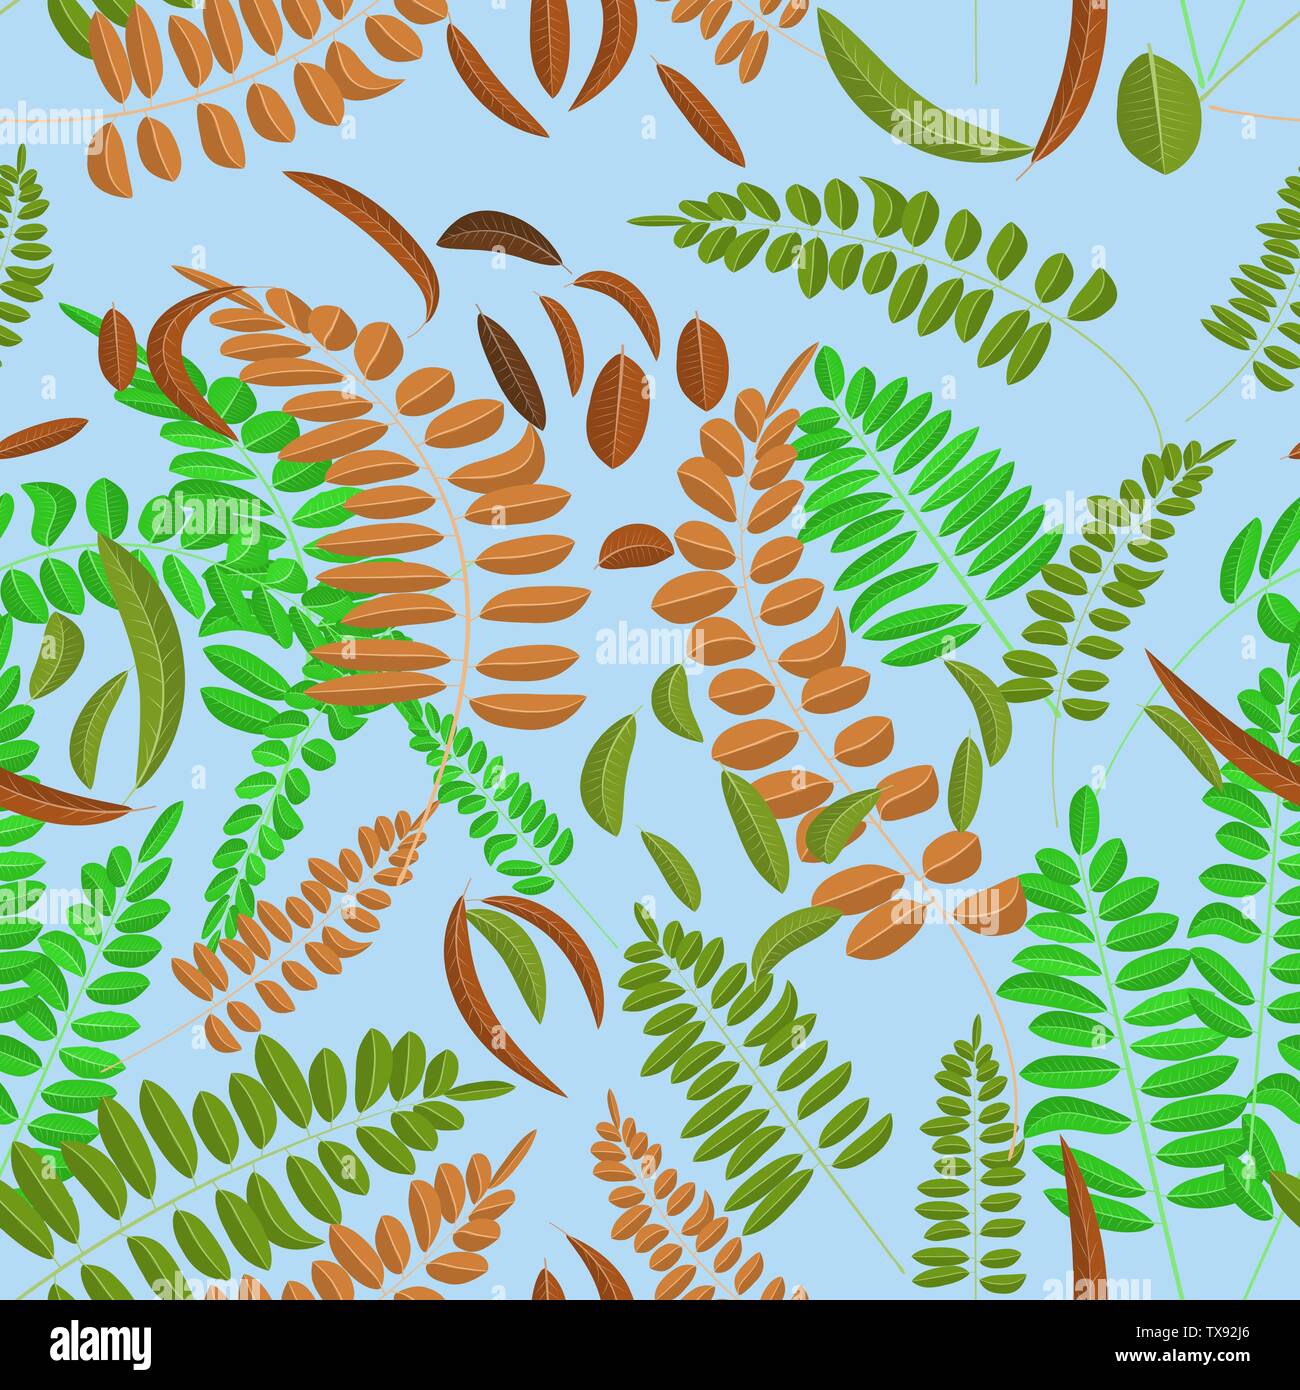 Modèle sans couture avec le vert et le brun des feuilles d'acacia sur fond bleu clair. Illustration vectorielle, automne, acacia, feuilles. Illustration de Vecteur